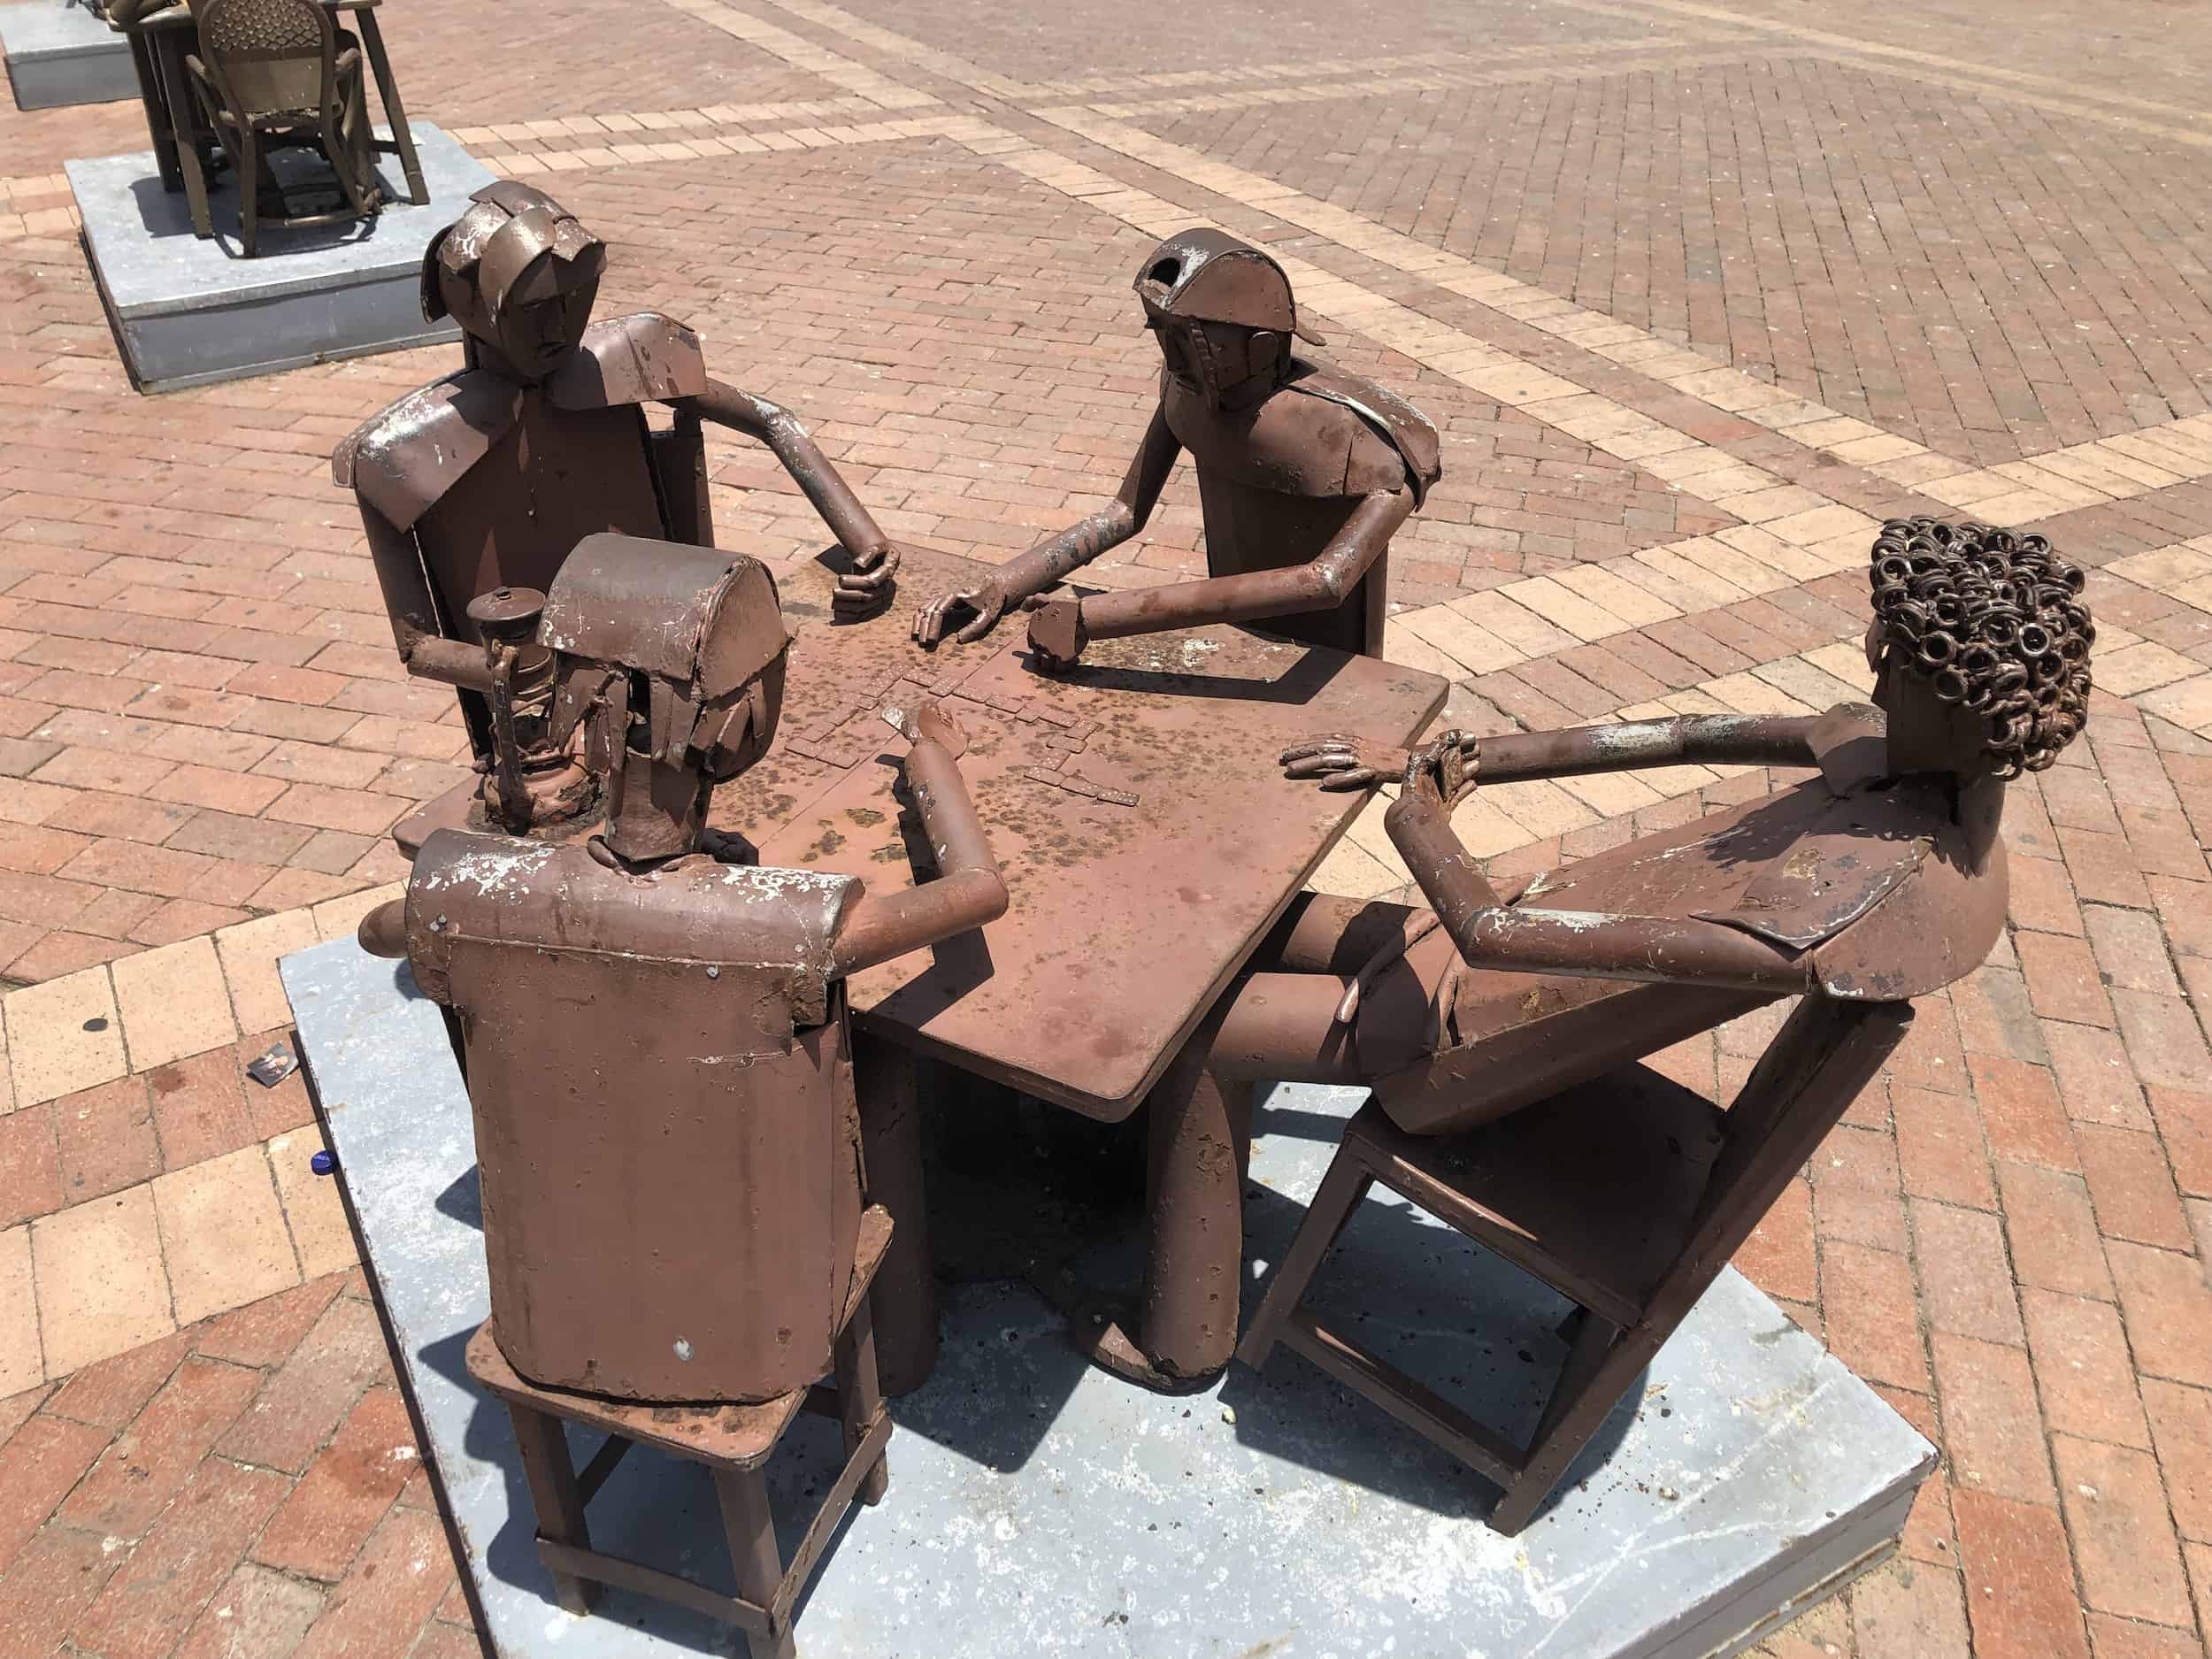 Sculpture by Edgardo Carmona in Plaza de San Pedro Claver in Cartagena, Colombia